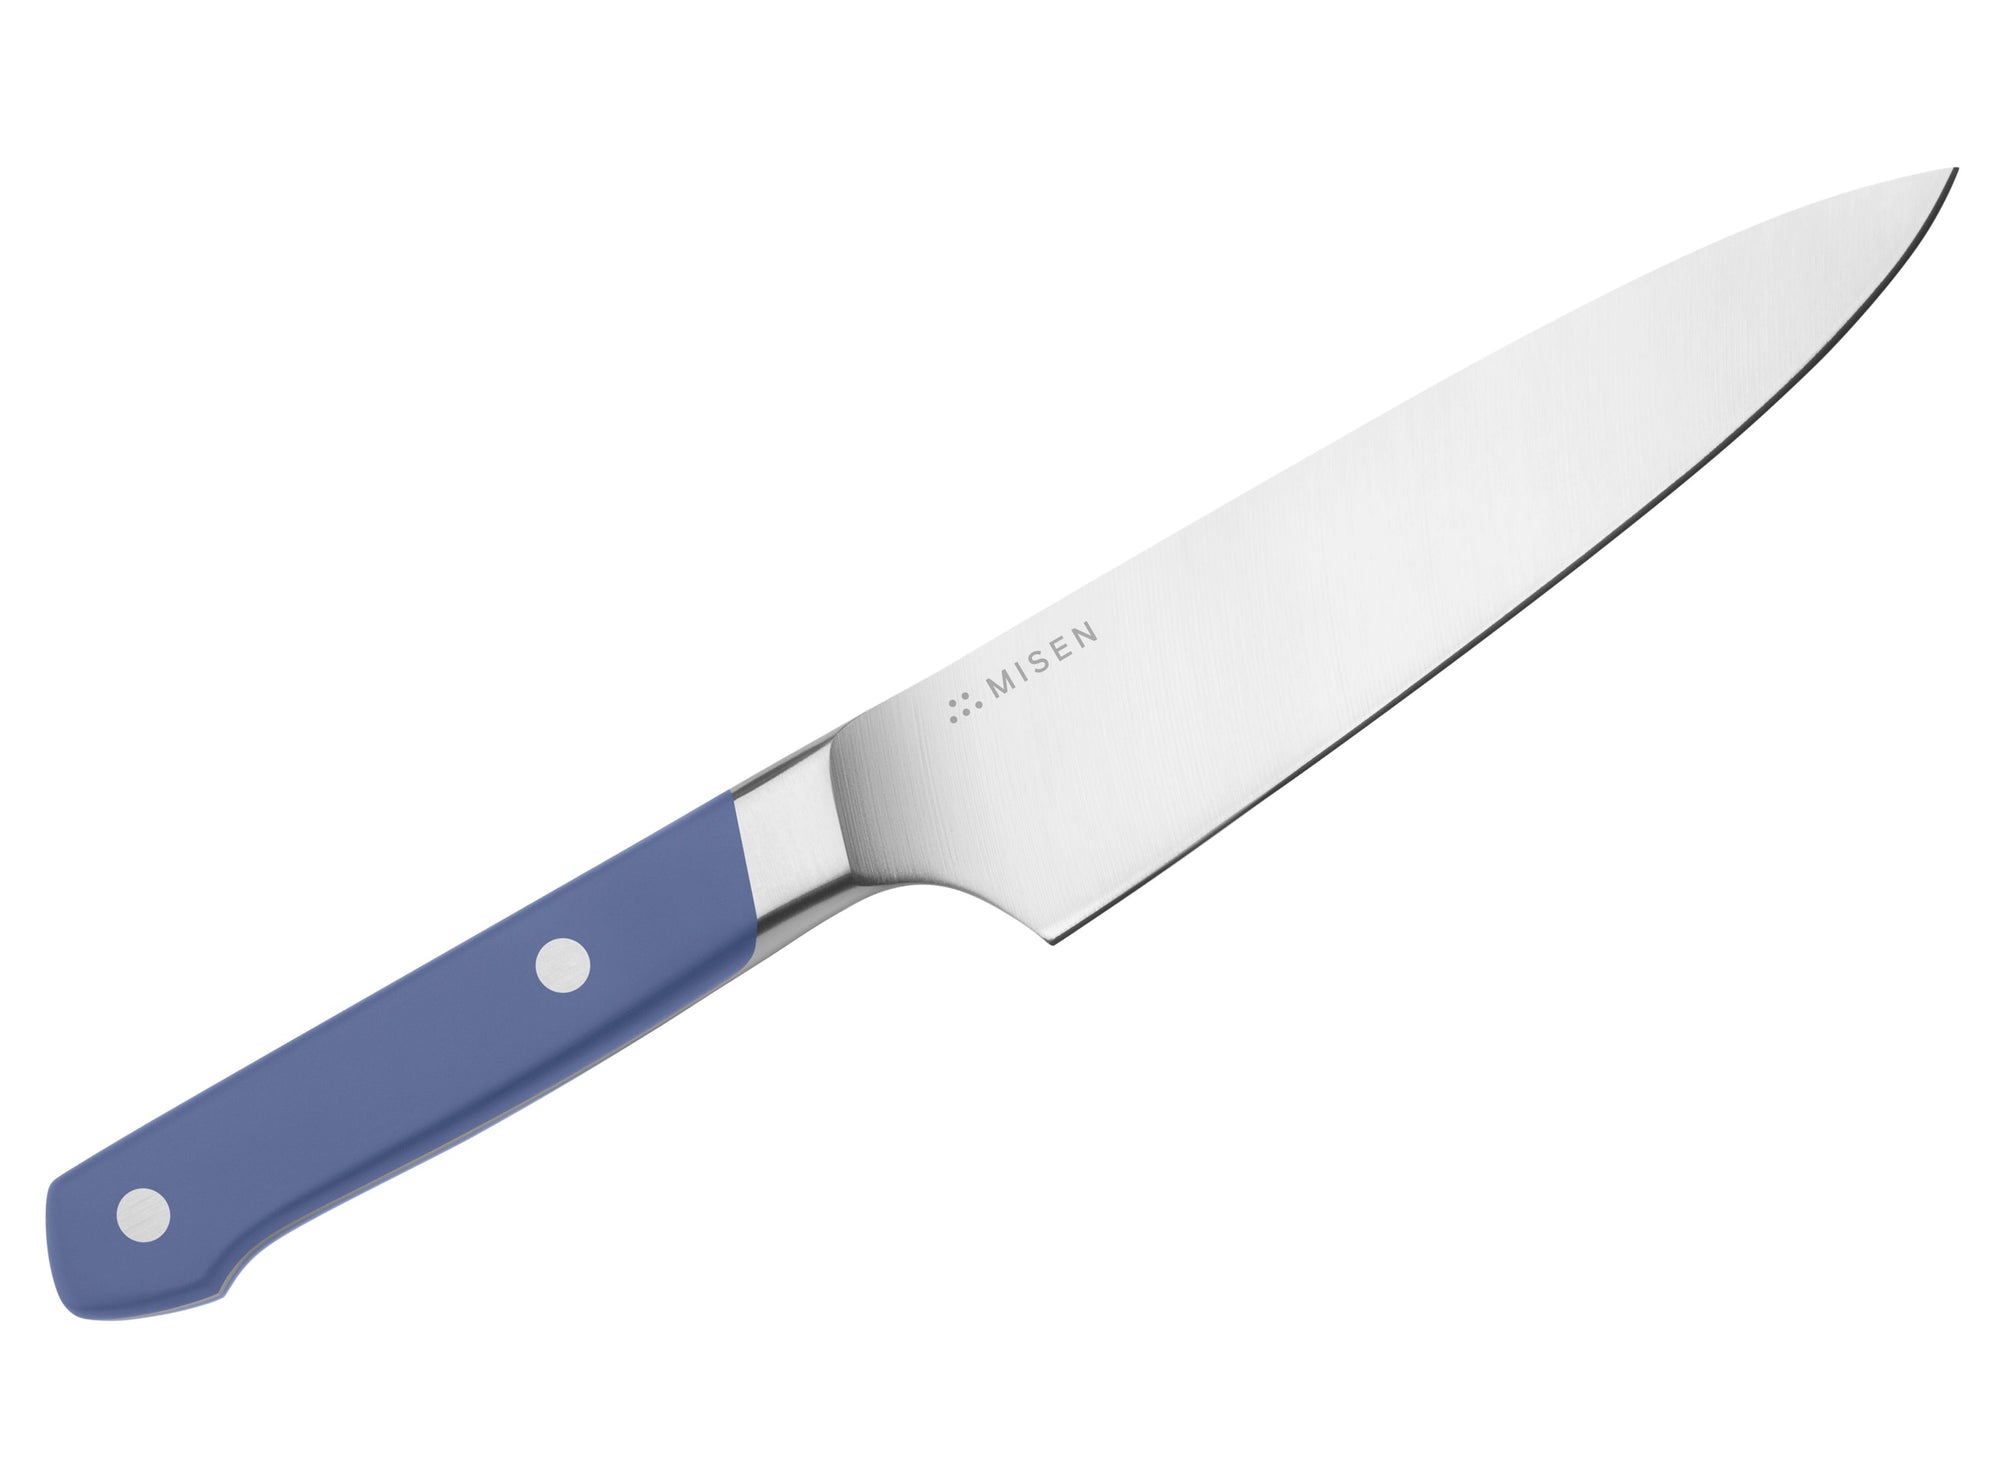 Misen Utility Knife in blue